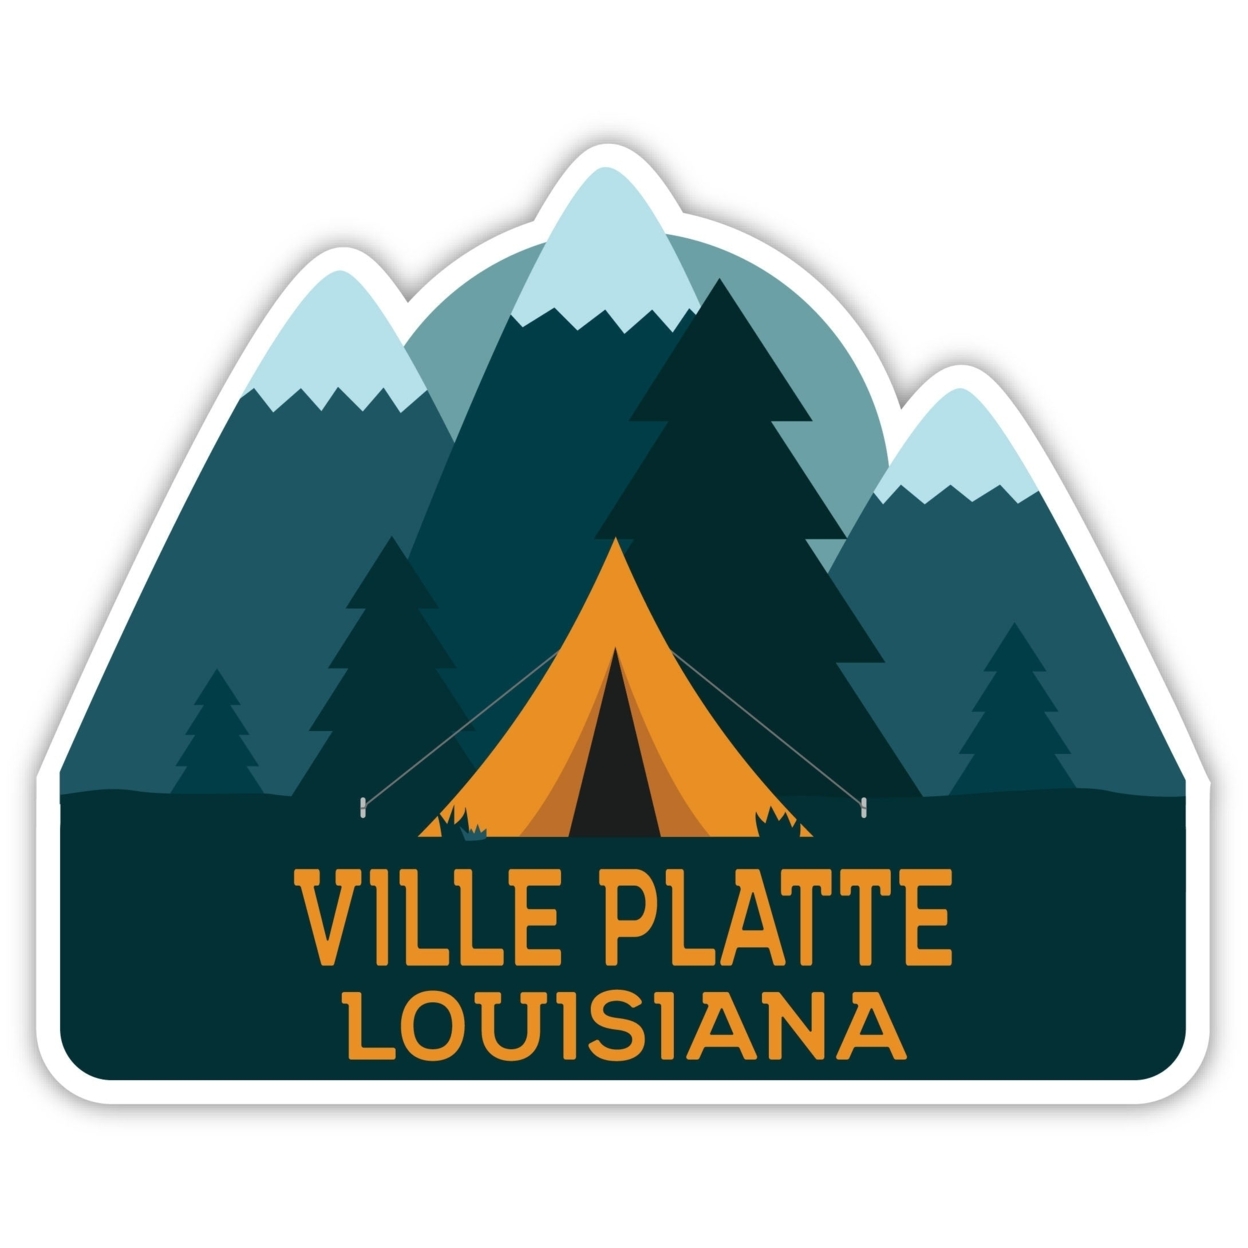 Ville Platte Louisiana Souvenir Decorative Stickers (Choose Theme And Size) - Single Unit, 4-Inch, Tent